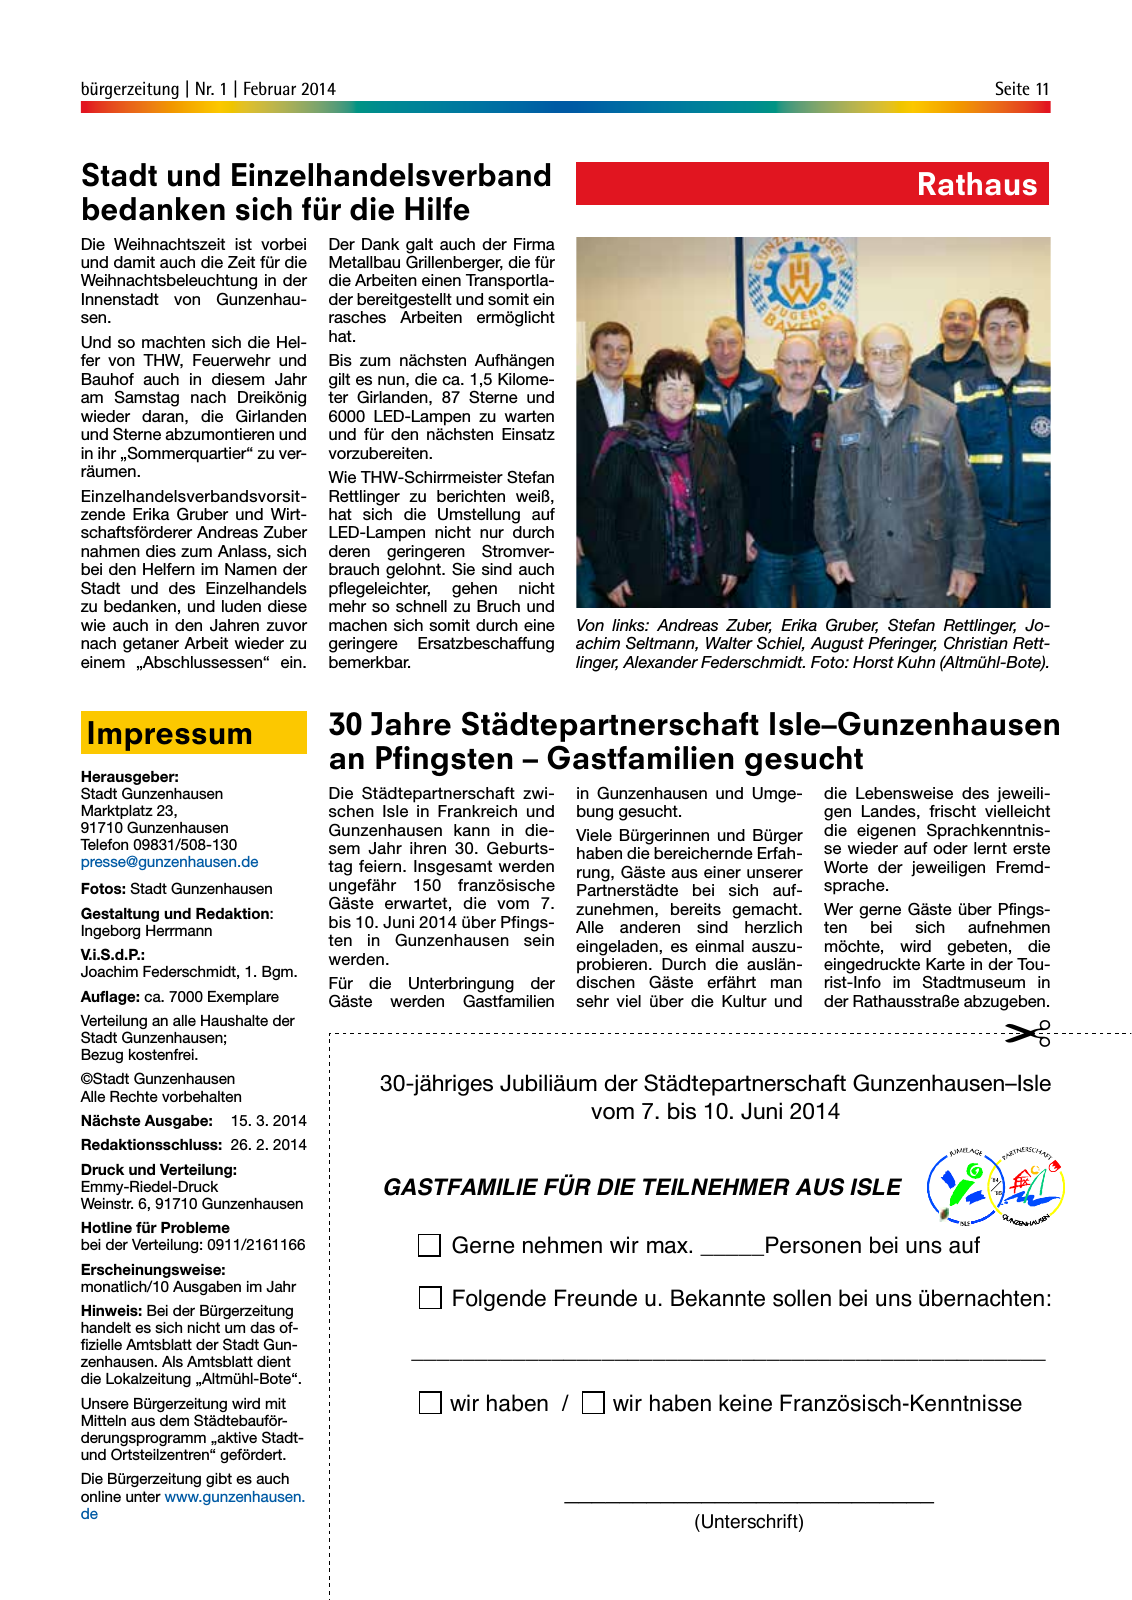 Vorschau StadtLandGUN - Gunzenhäuser Bürgerzeitung Seite 11